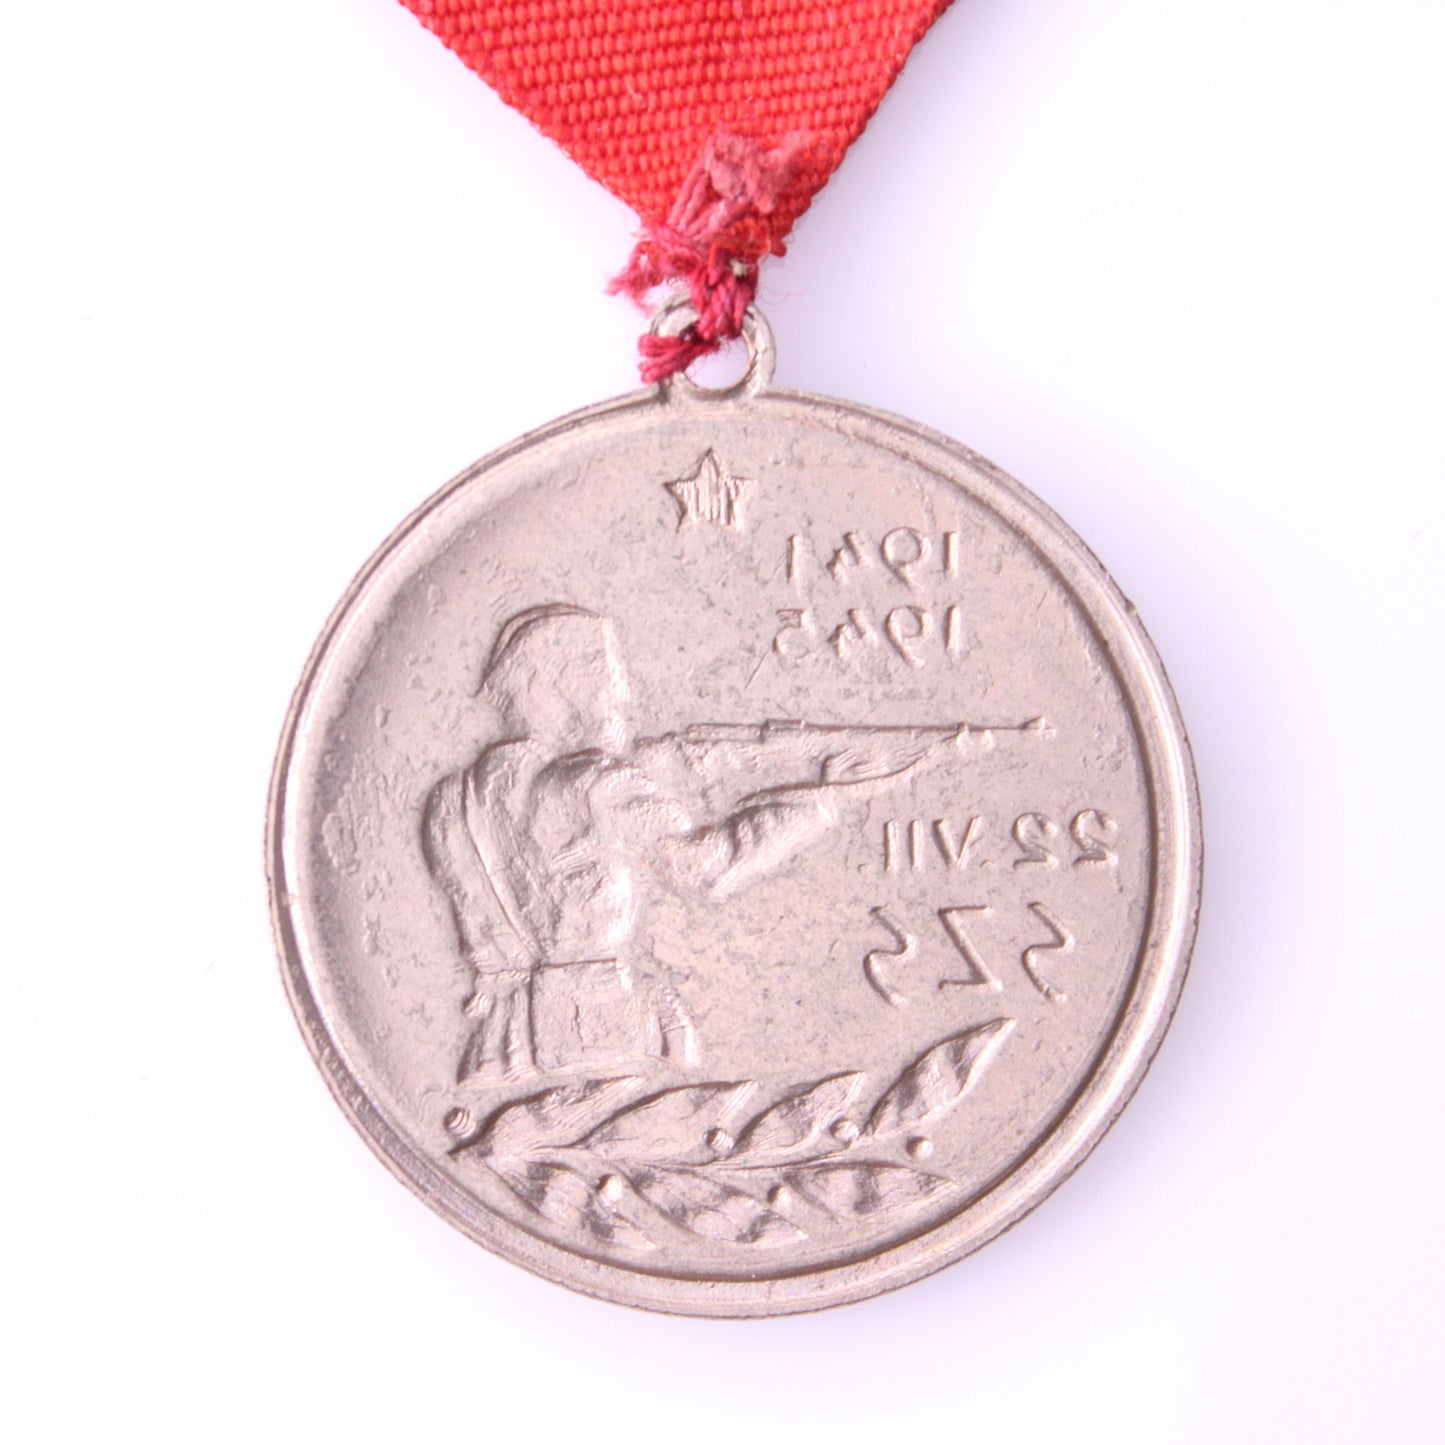 YUGOSLAVIA Slovenia / Shooting Association of Slovenia / Silver Medal